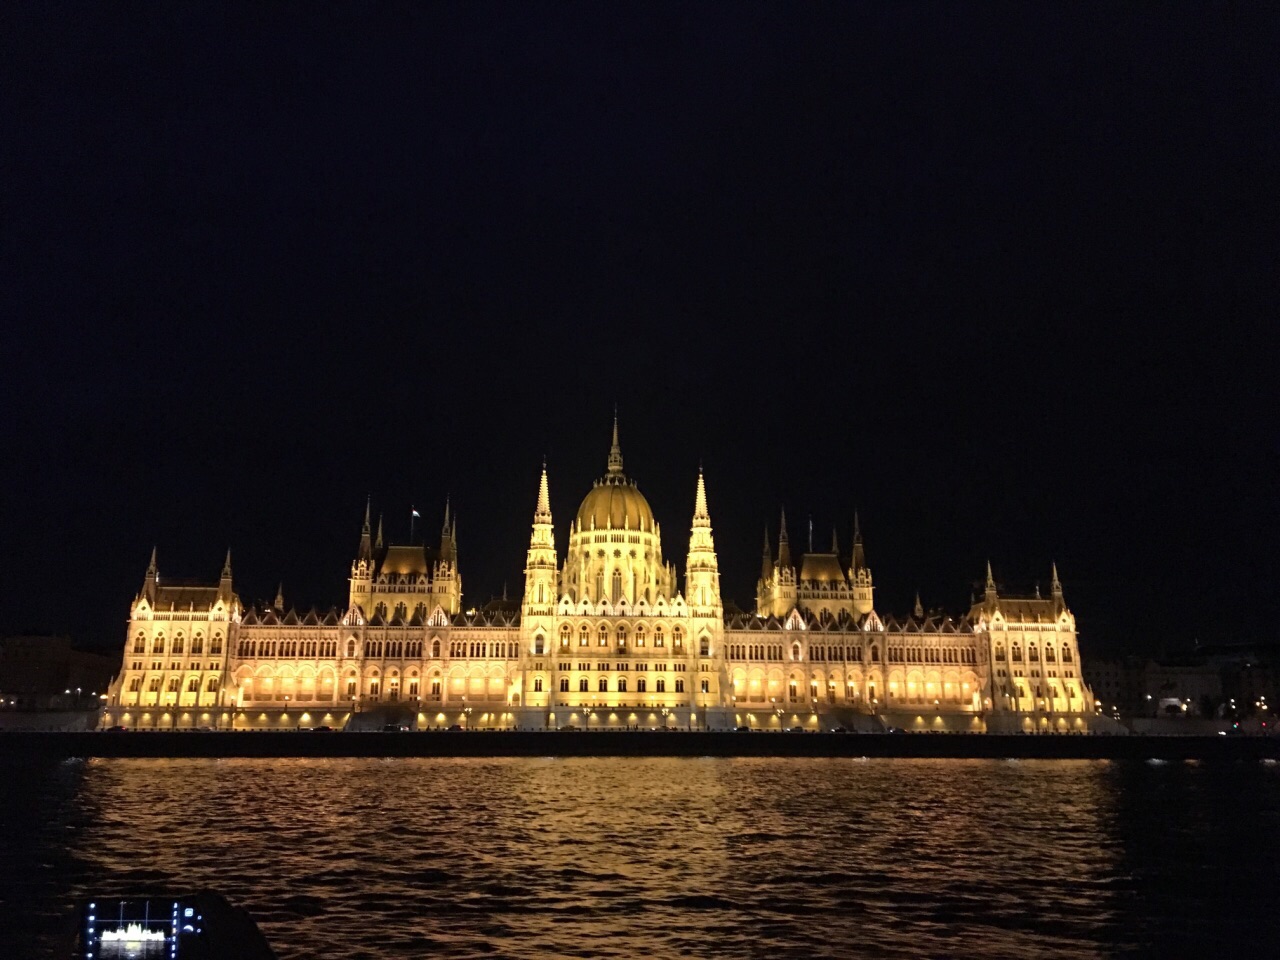 布达佩斯夜景，辉煌的灯光充分展示了布达佩斯的堂皇之美。